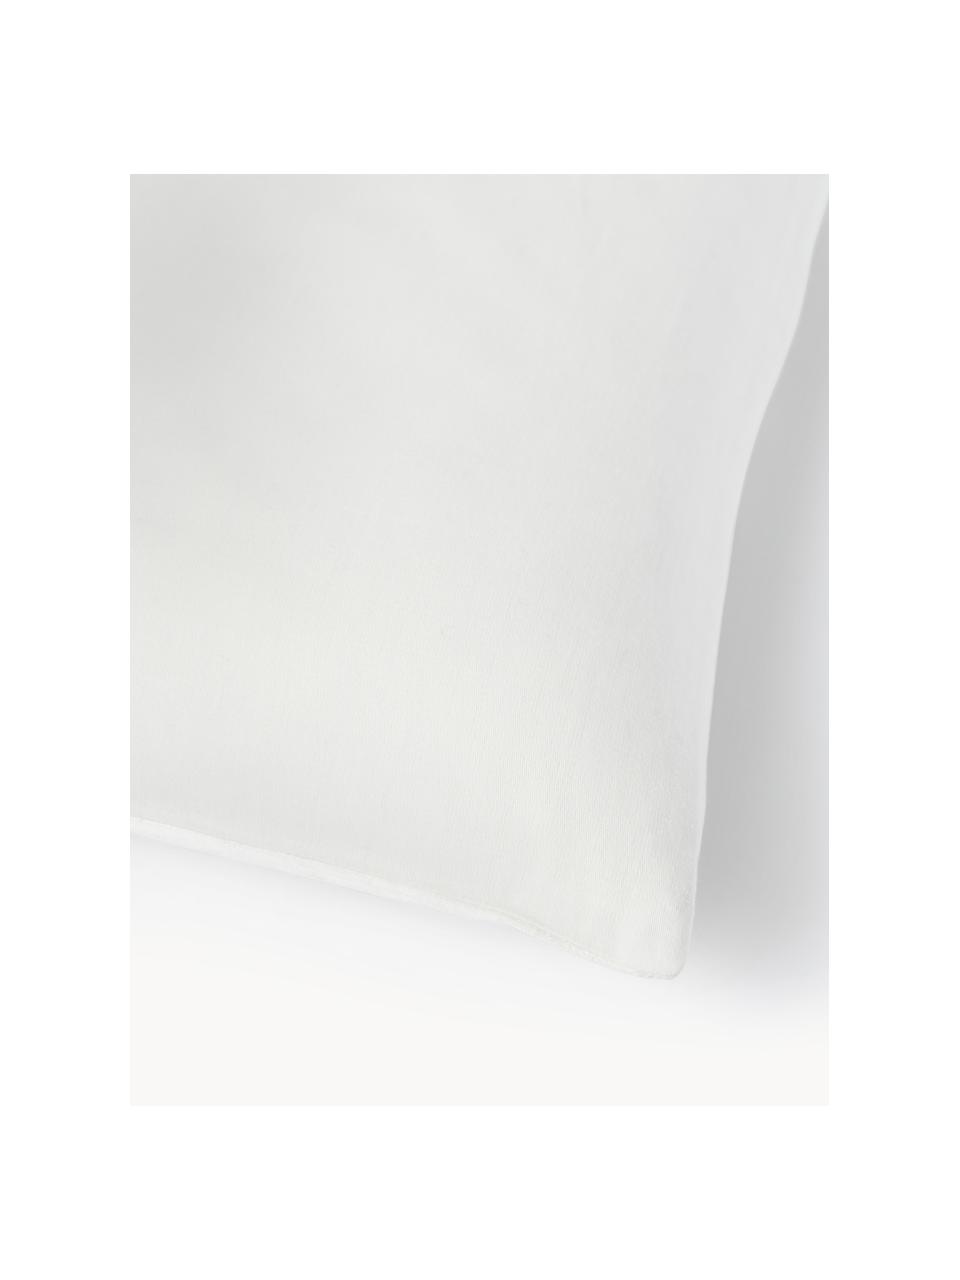 Kissenhülle Aryane aus Seide, Vorderseite: 100 % Seide, Rückseite: 100% Baumwolle, Weiss, B 45 x L 45 cm